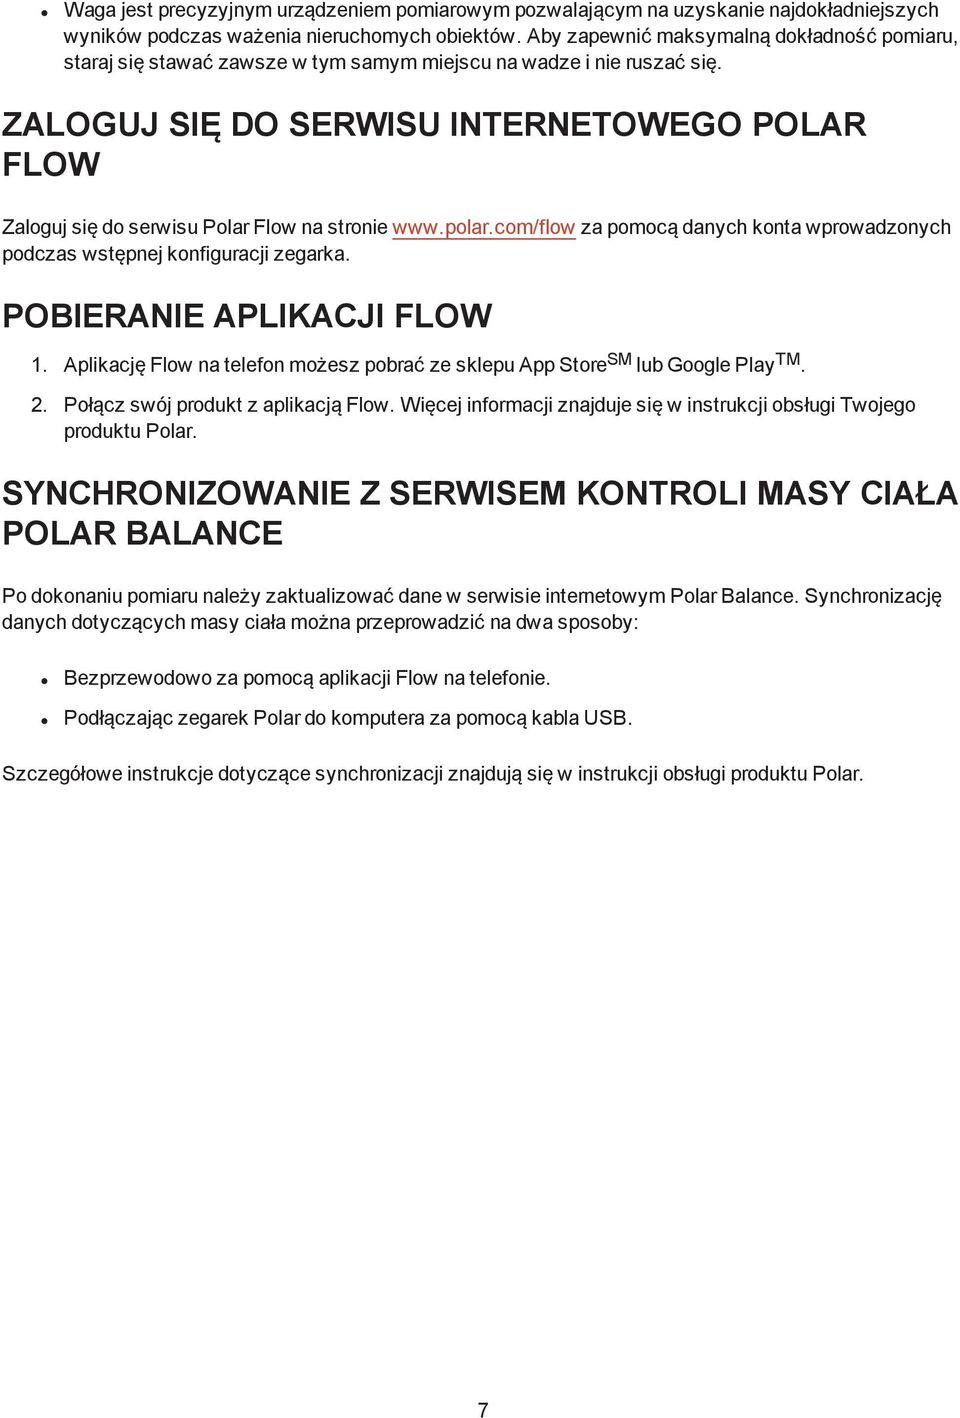 ZALOGUJ SIĘ DO SERWISU INTERNETOWEGO POLAR FLOW Zaloguj się do serwisu Polar Flow na stronie www.polar.com/flow za pomocą danych konta wprowadzonych podczas wstępnej konfiguracji zegarka.